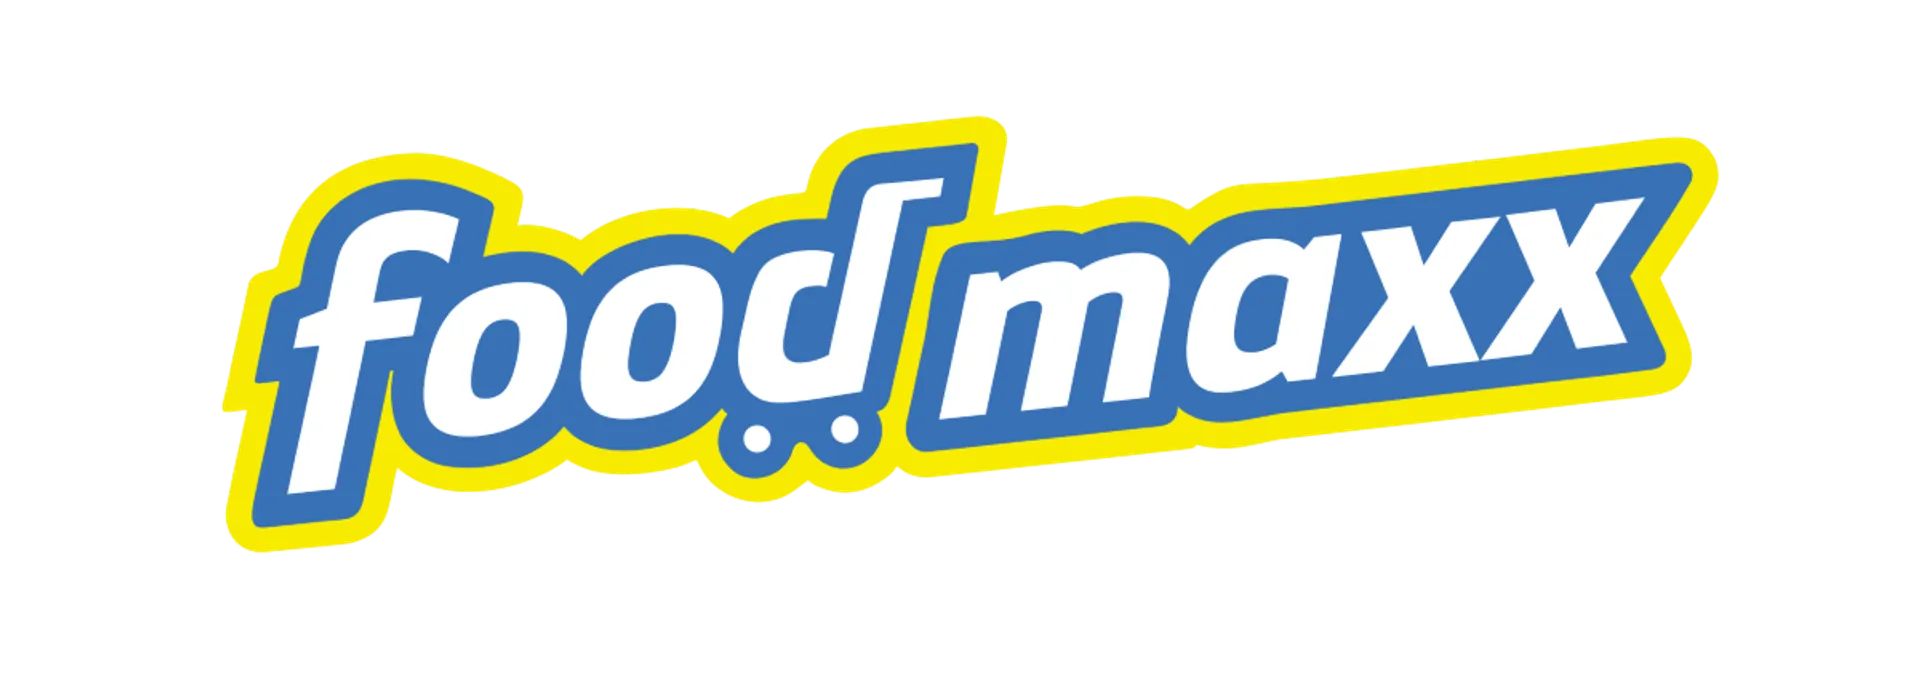 FOODMAXX logo